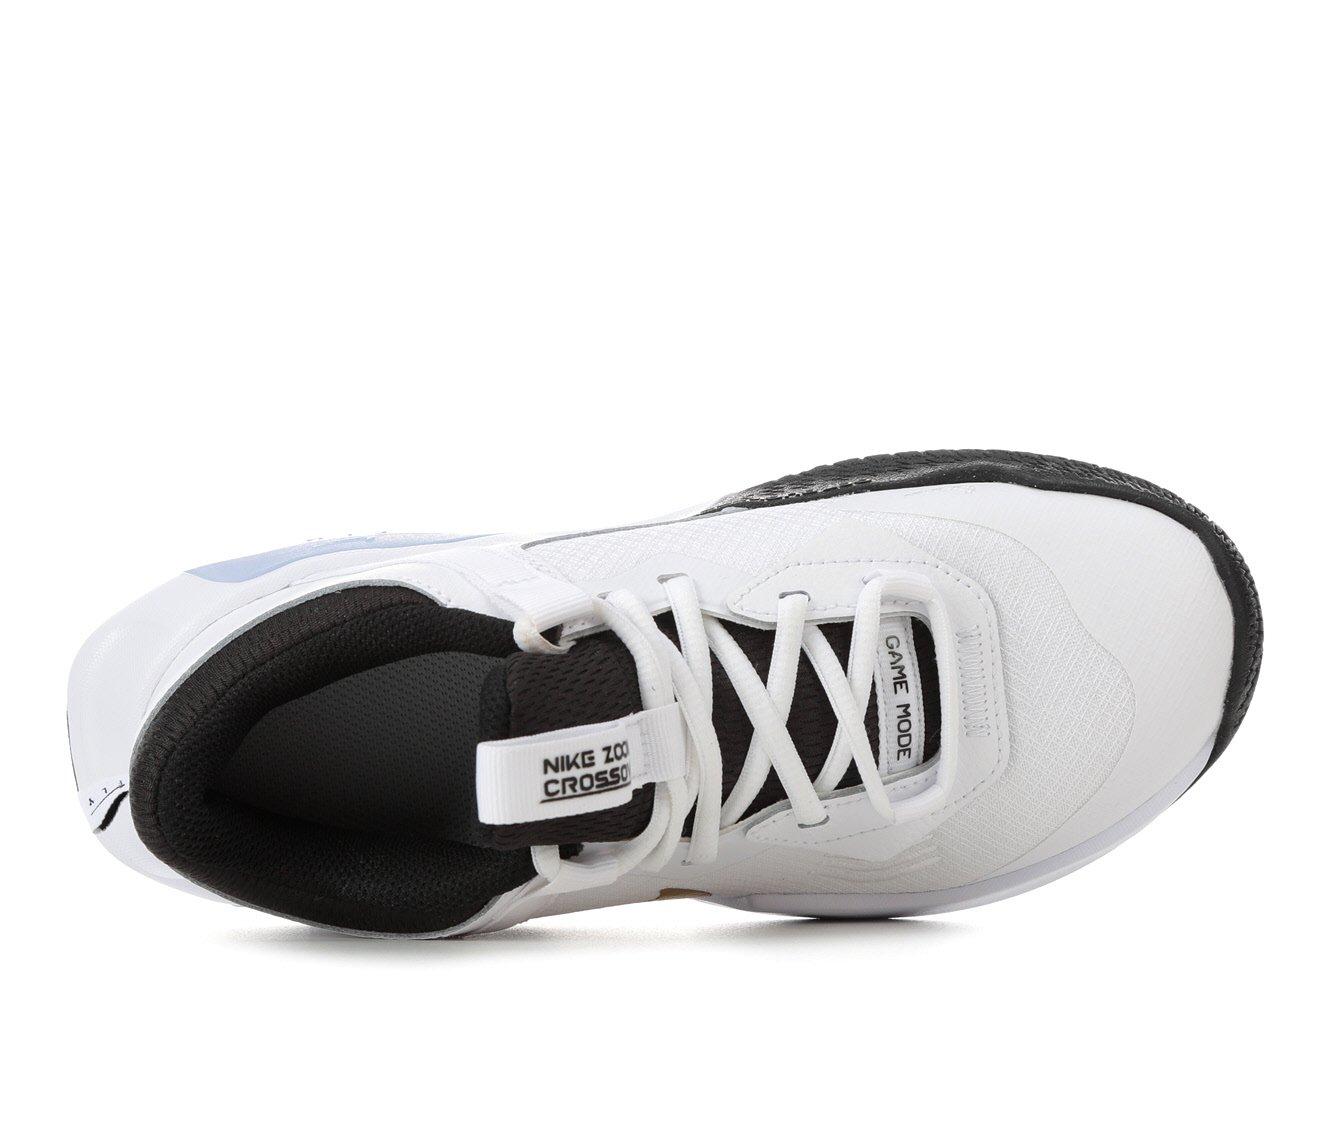 nieuws Erfgenaam kabel Kids' Nike Big Kid Air Zoom Crossover Basketball Shoes